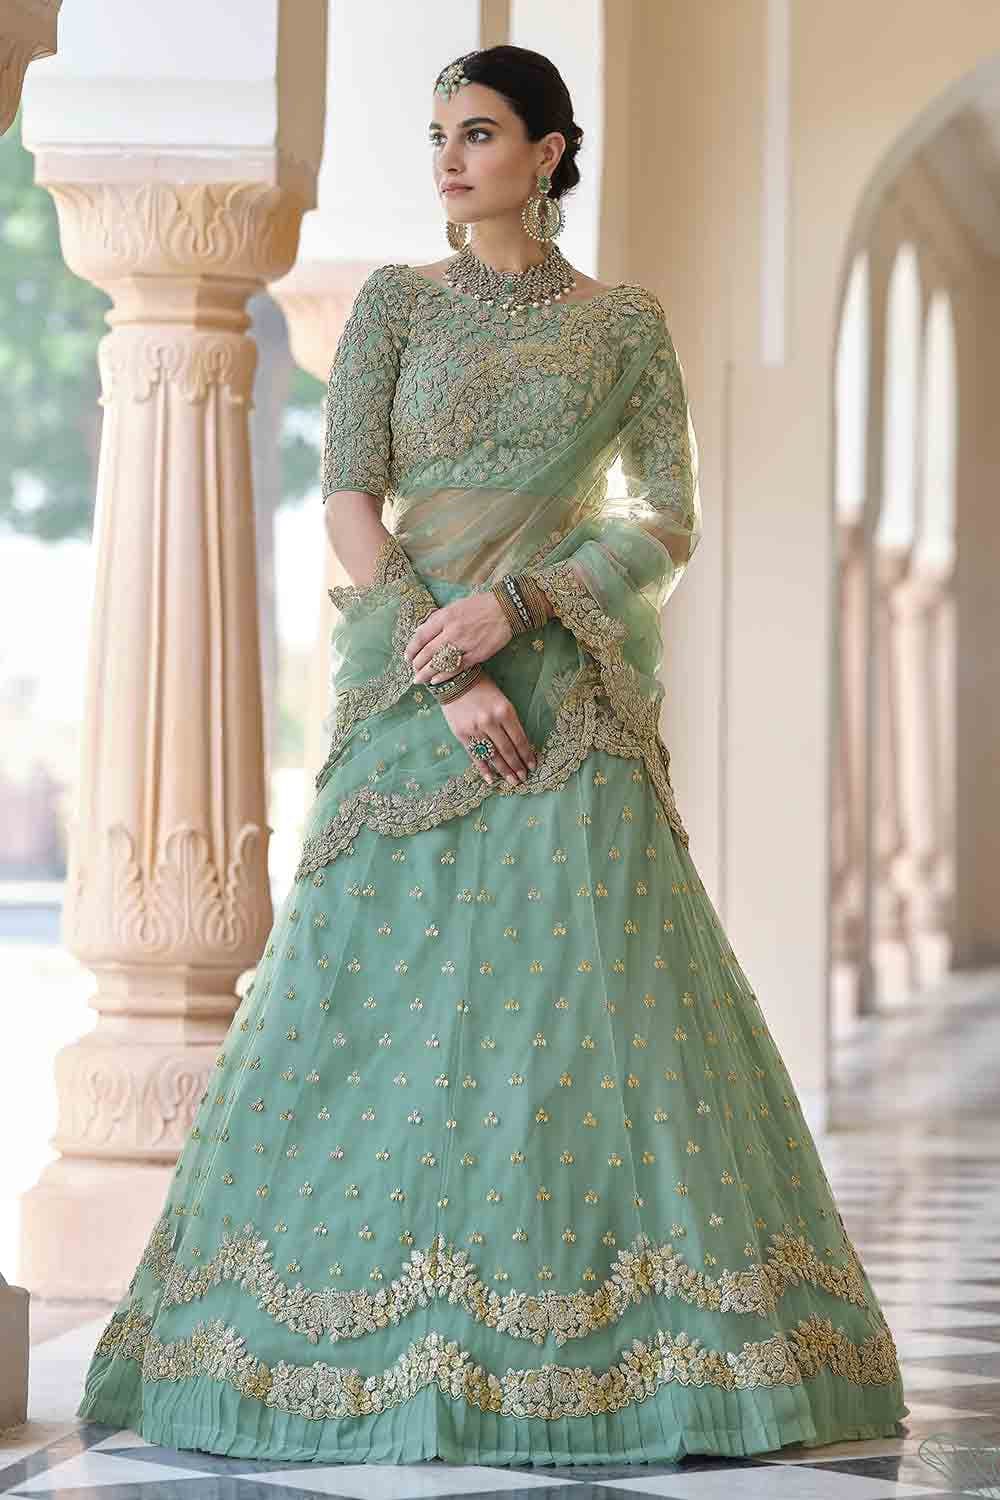 Lehenga Sarees: Buy Latest Indian Designer Lehenga Style Sarees Online -  Utsav Fashion | Lehenga style saree, Indian inspired fashion, Lehenga style